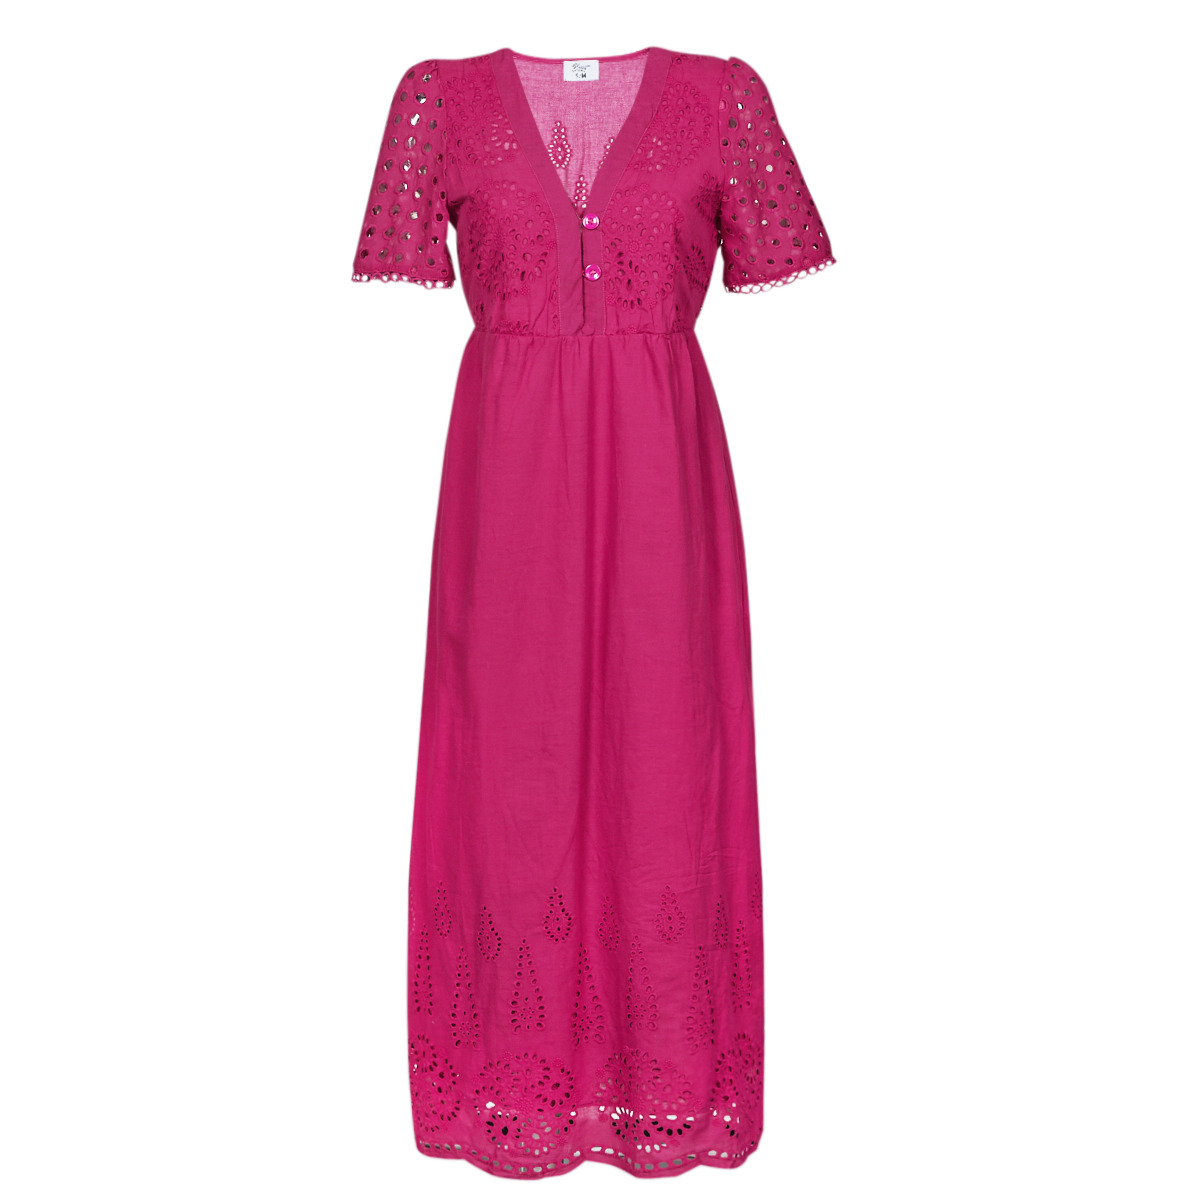 Textil Ženy Společenské šaty Betty London MARTI Růžová